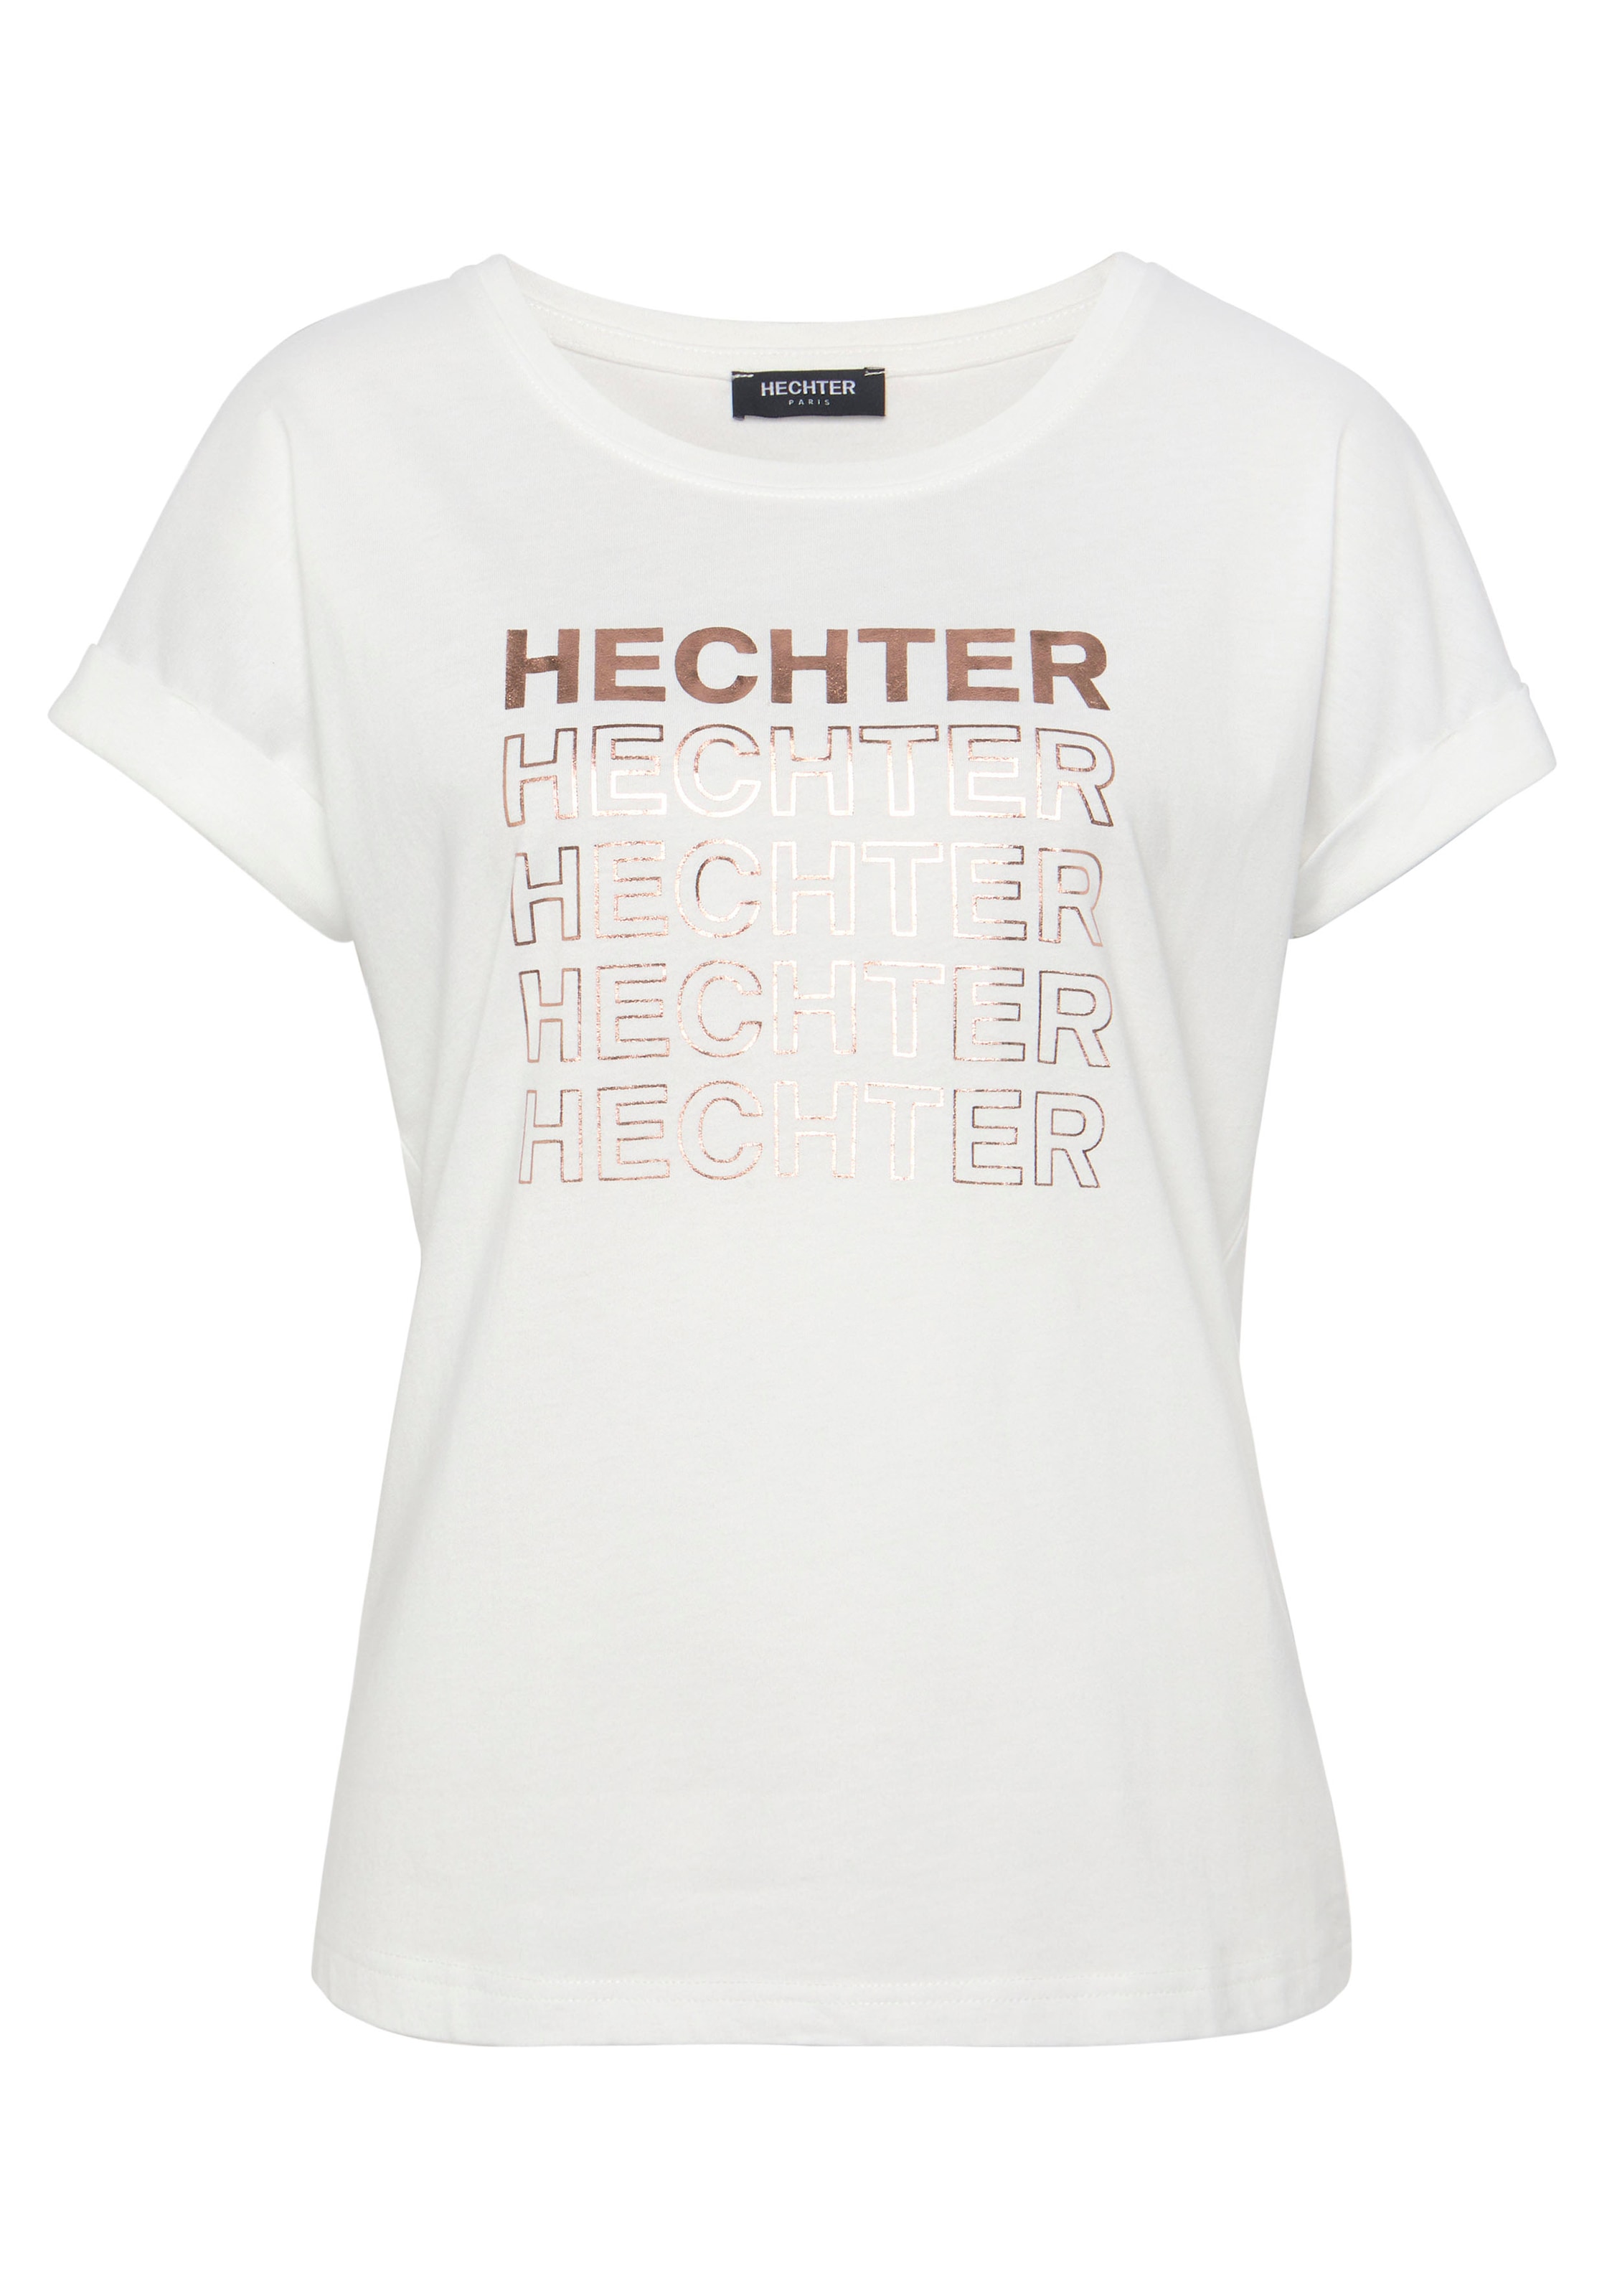 T-Shirt, bei HECHTER bestellen OTTO PARIS mit Markendruck